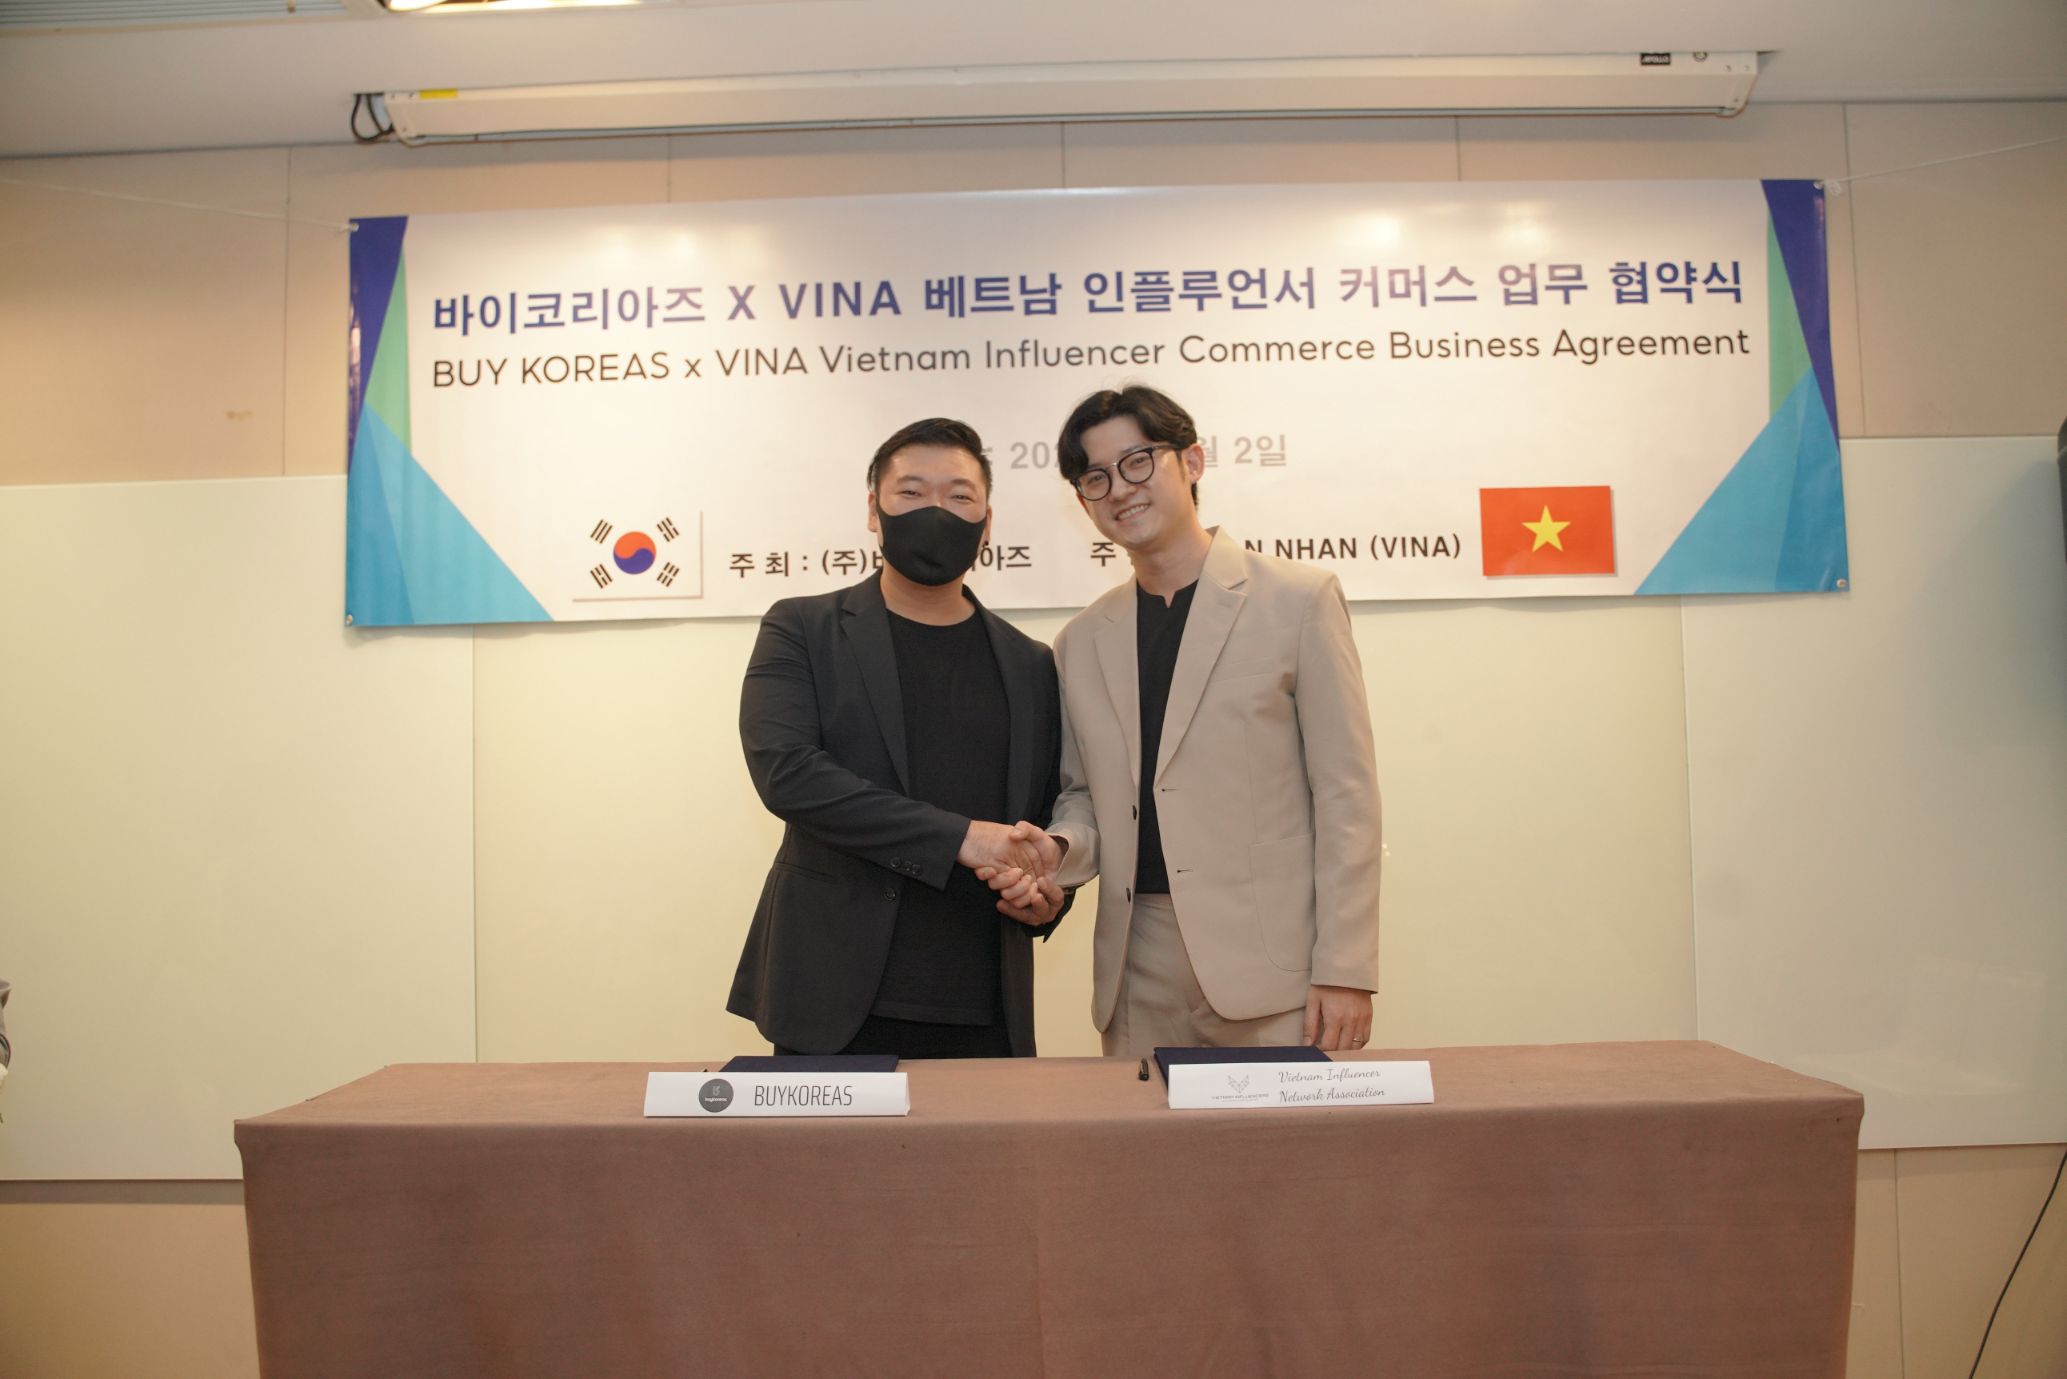 Buy Koreas và VINA ký kết hợp tác chiến lược kích hoạt thị trường thông qua KOLs 3 Buy Koreas và VINA ký kết hợp tác chiến lược, kích hoạt thị trường thông qua KOLs